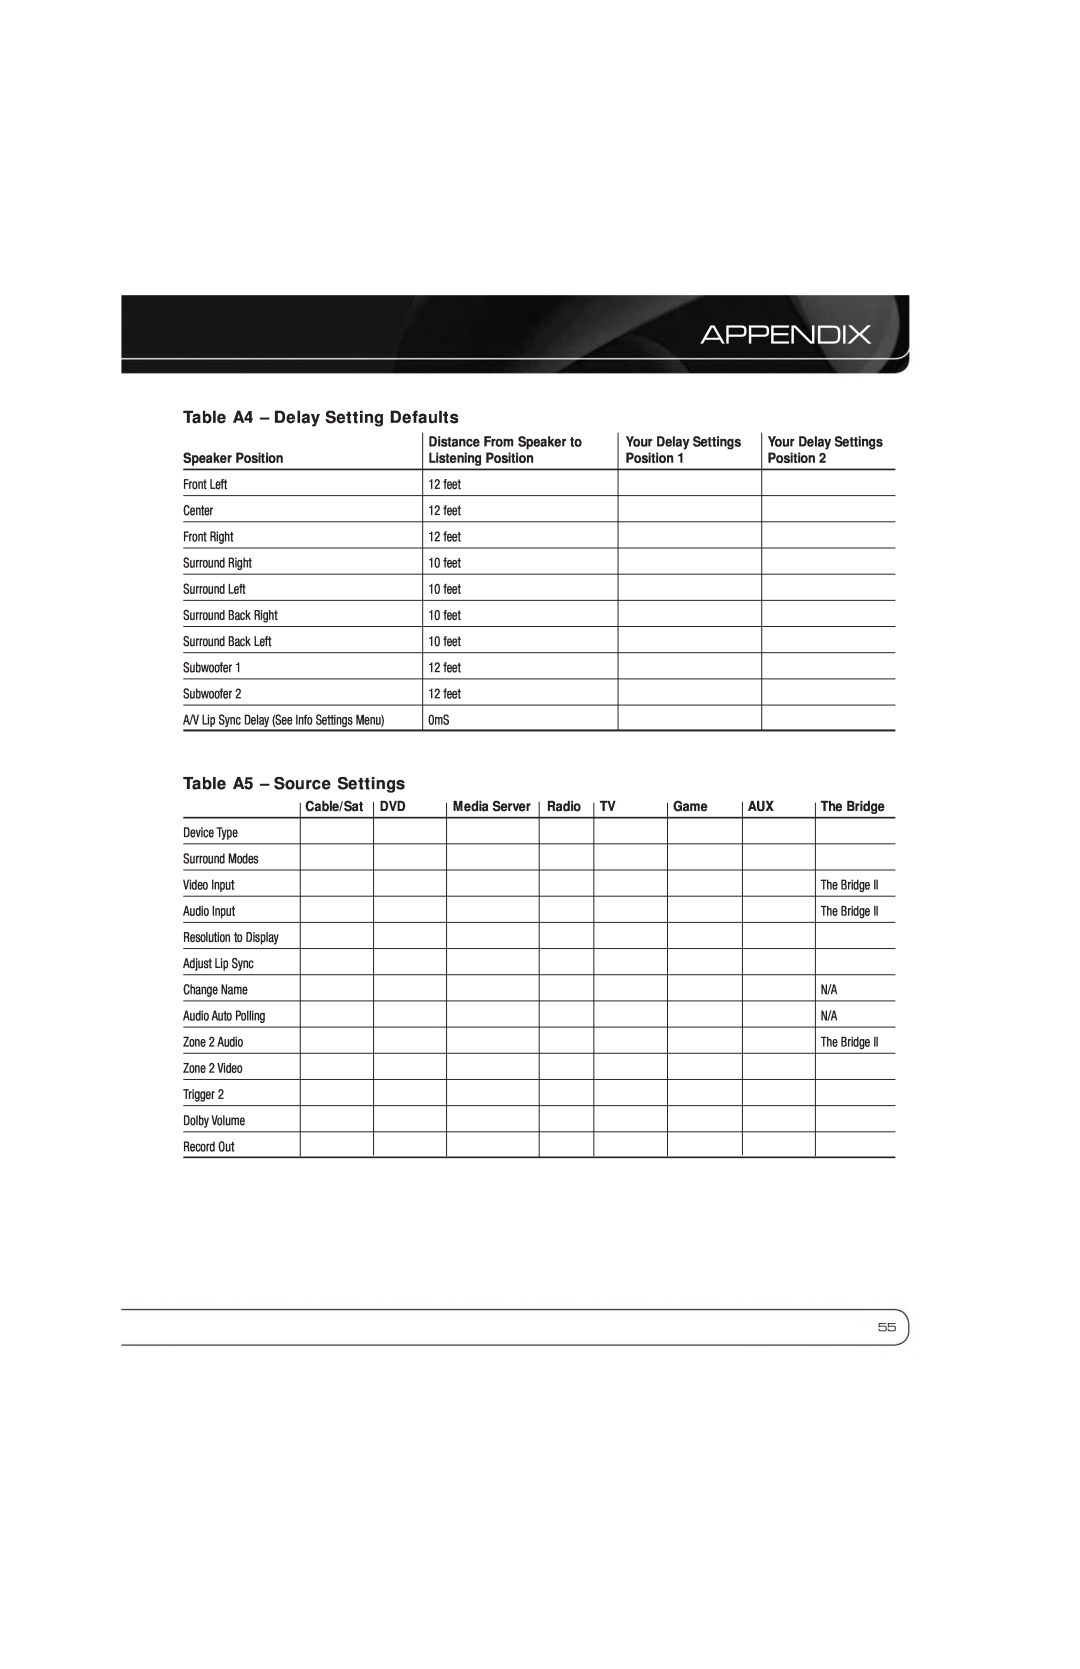 Harman-Kardon AVR 7550HD owner manual Table A4 - Delay Setting Defaults, Table A5 - Source Settings, Appendix 